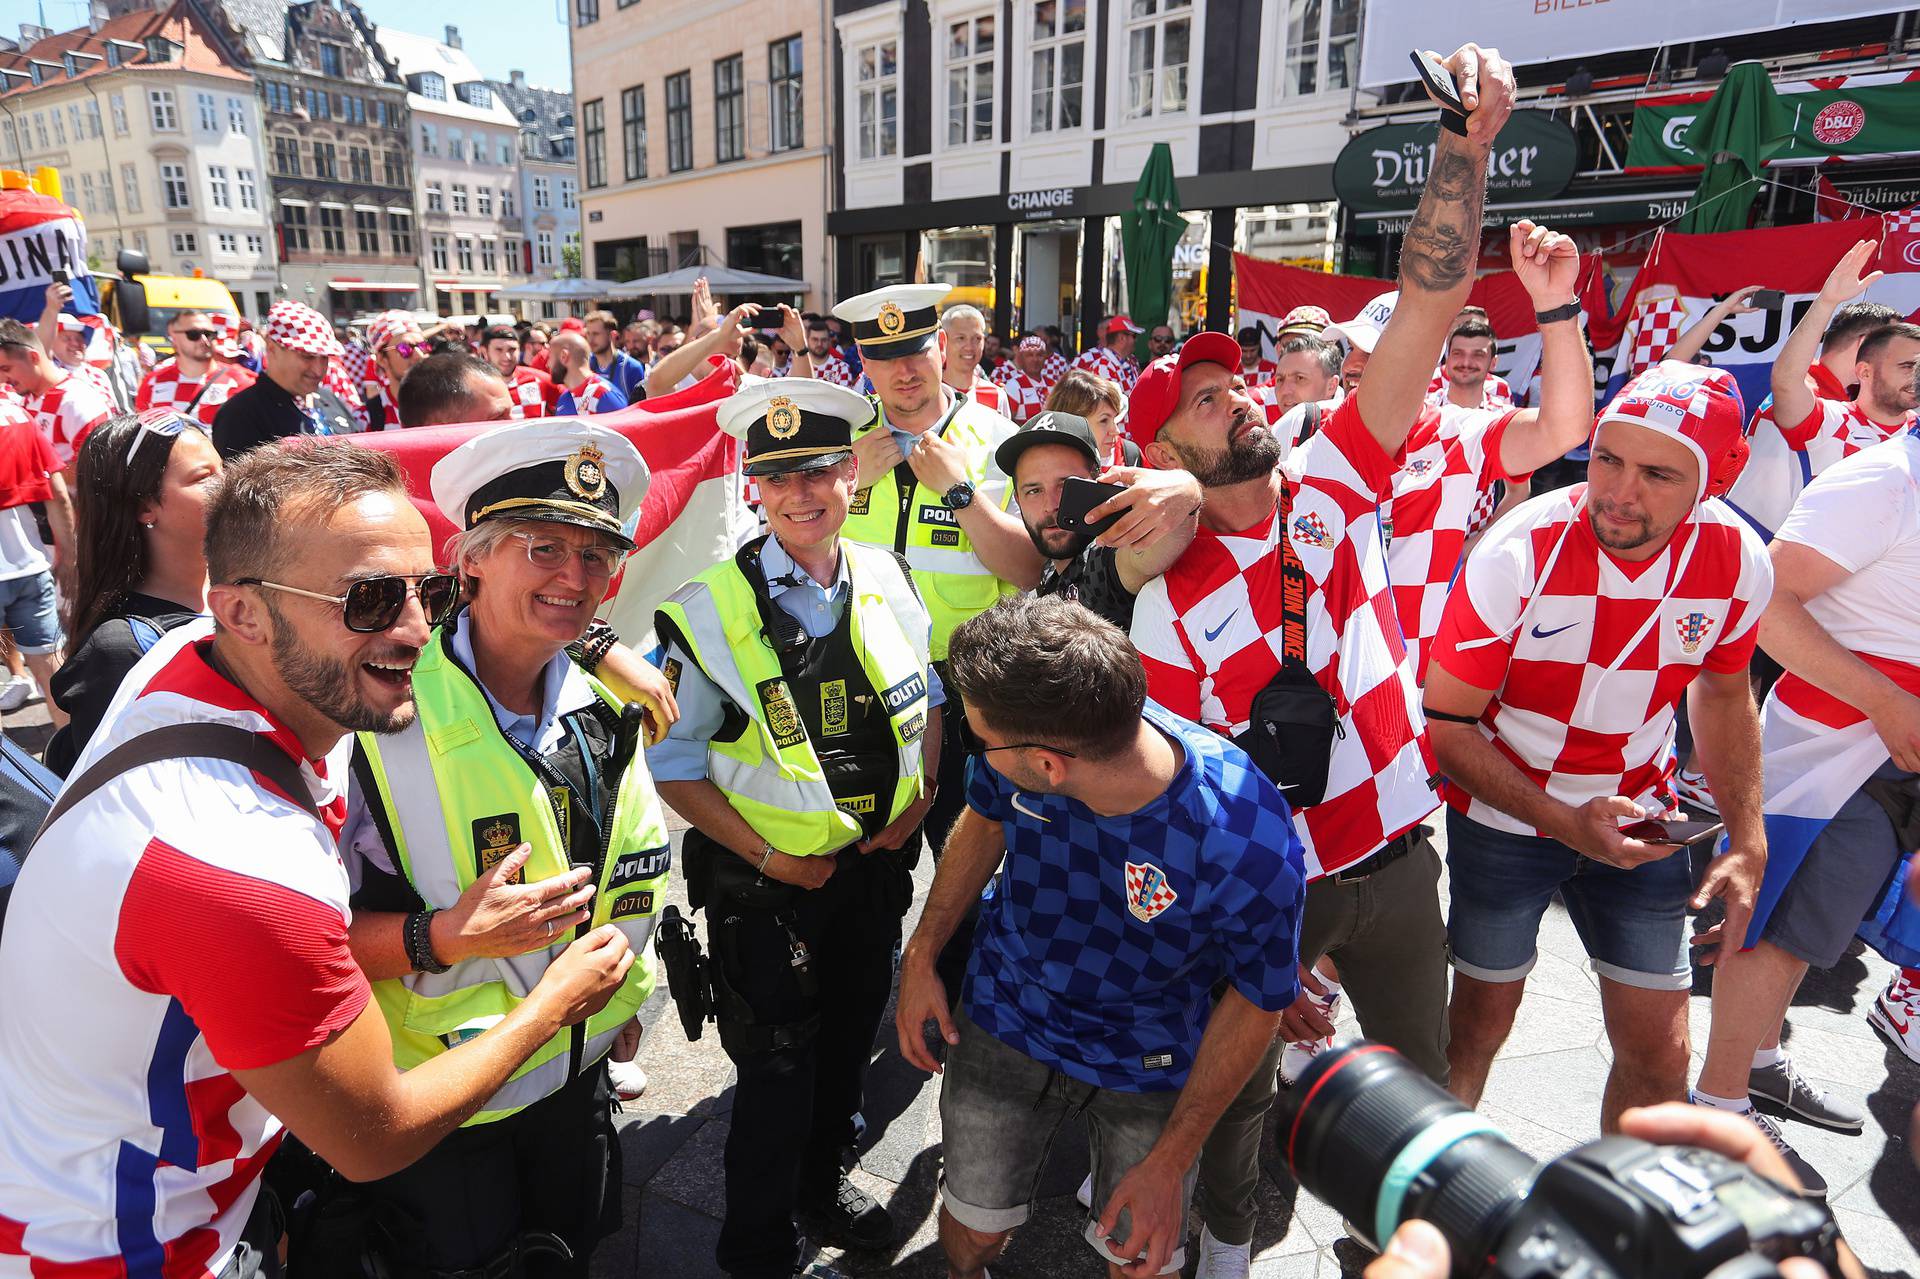 Kopenhagen: Navijaci Hrvatske i Španjolske u gradu uoči utakmice